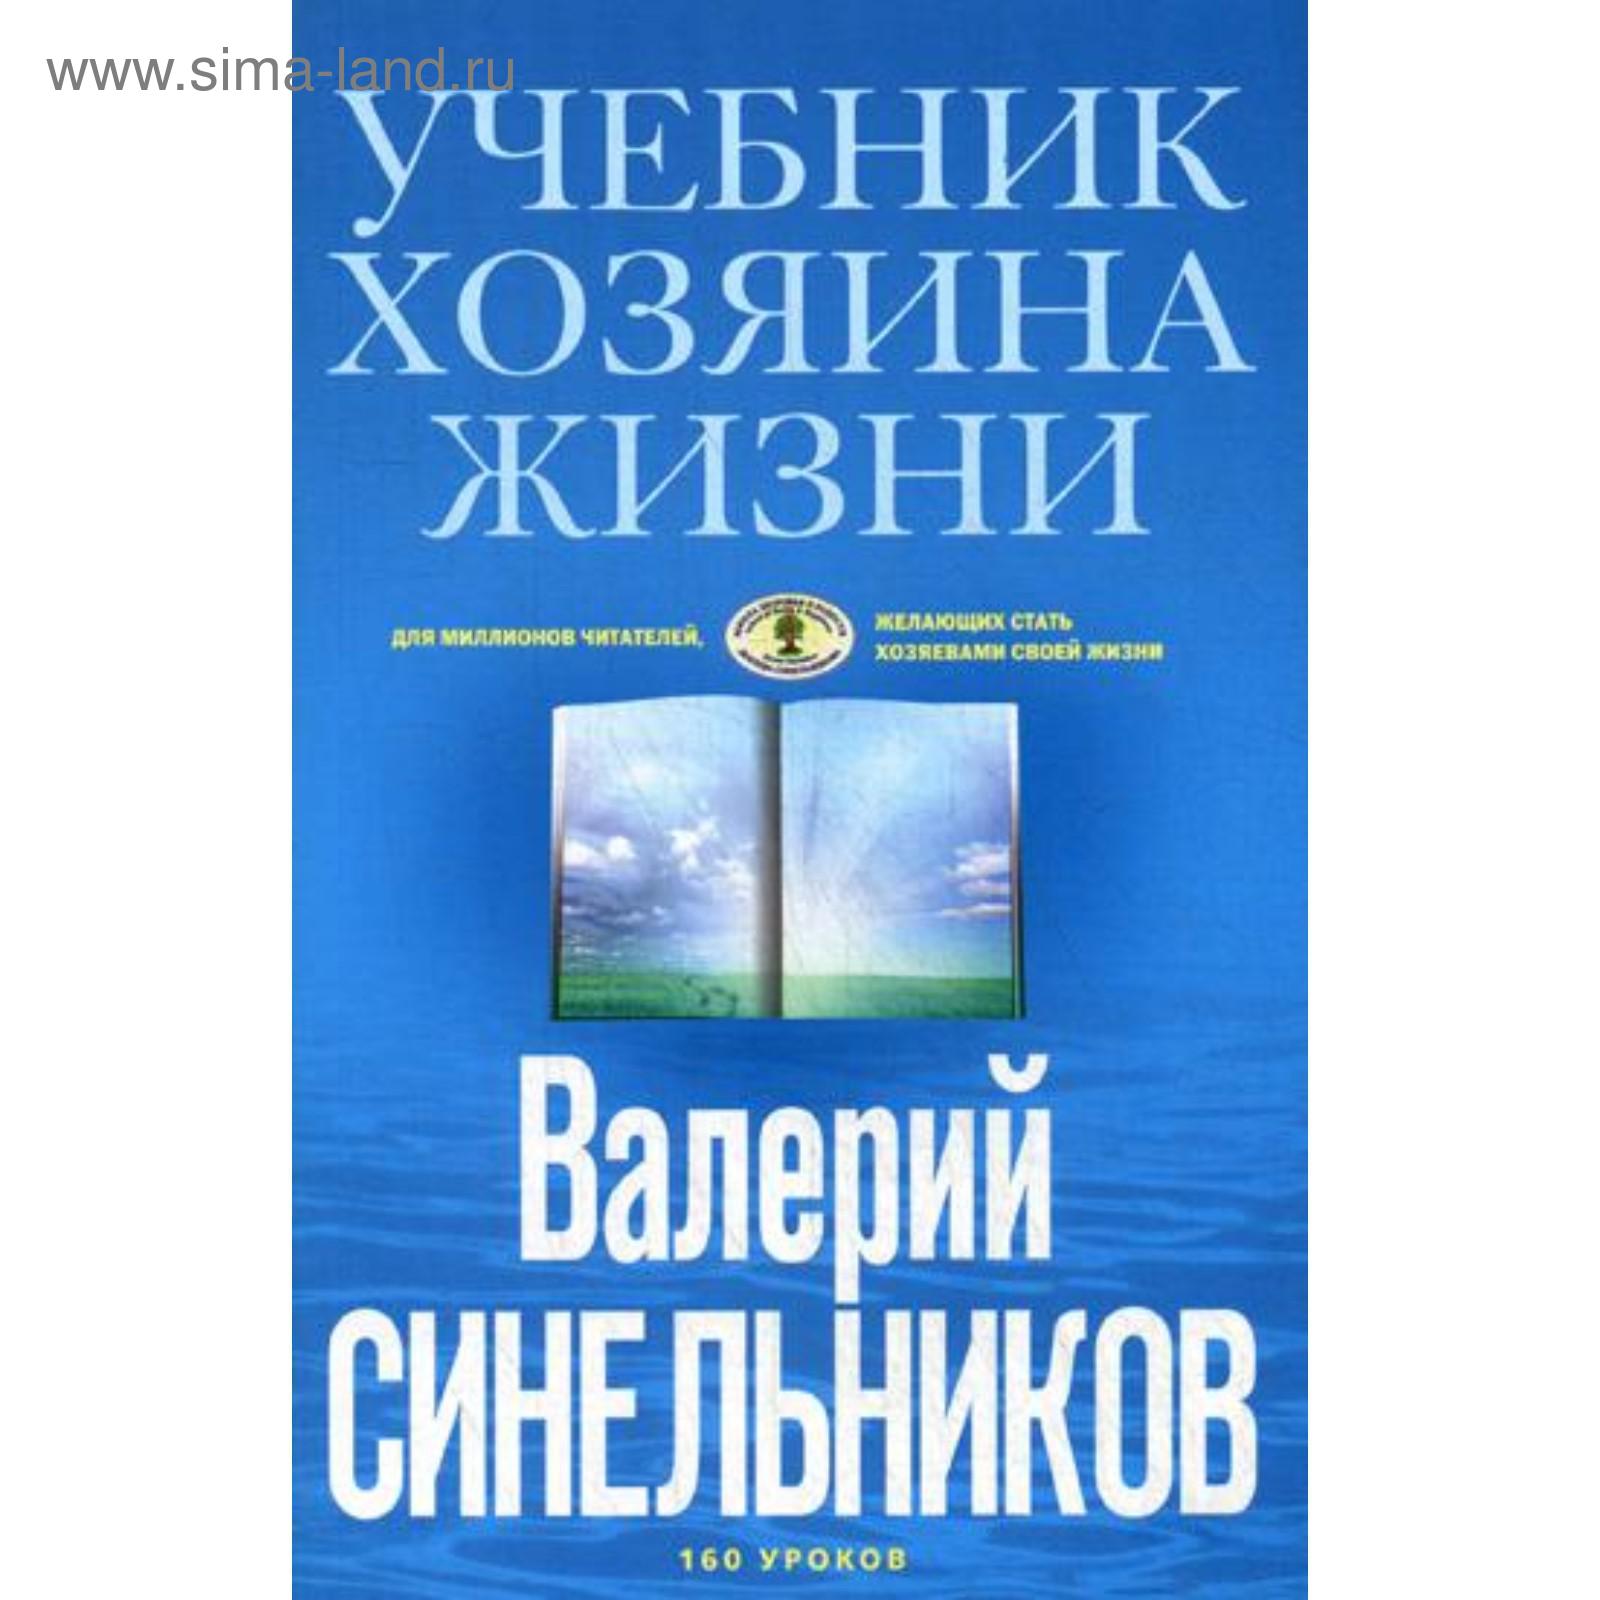 Книга: Синельников В.В. - Учебник Хозяина жизни. 160 уроков Валерия Синельникова